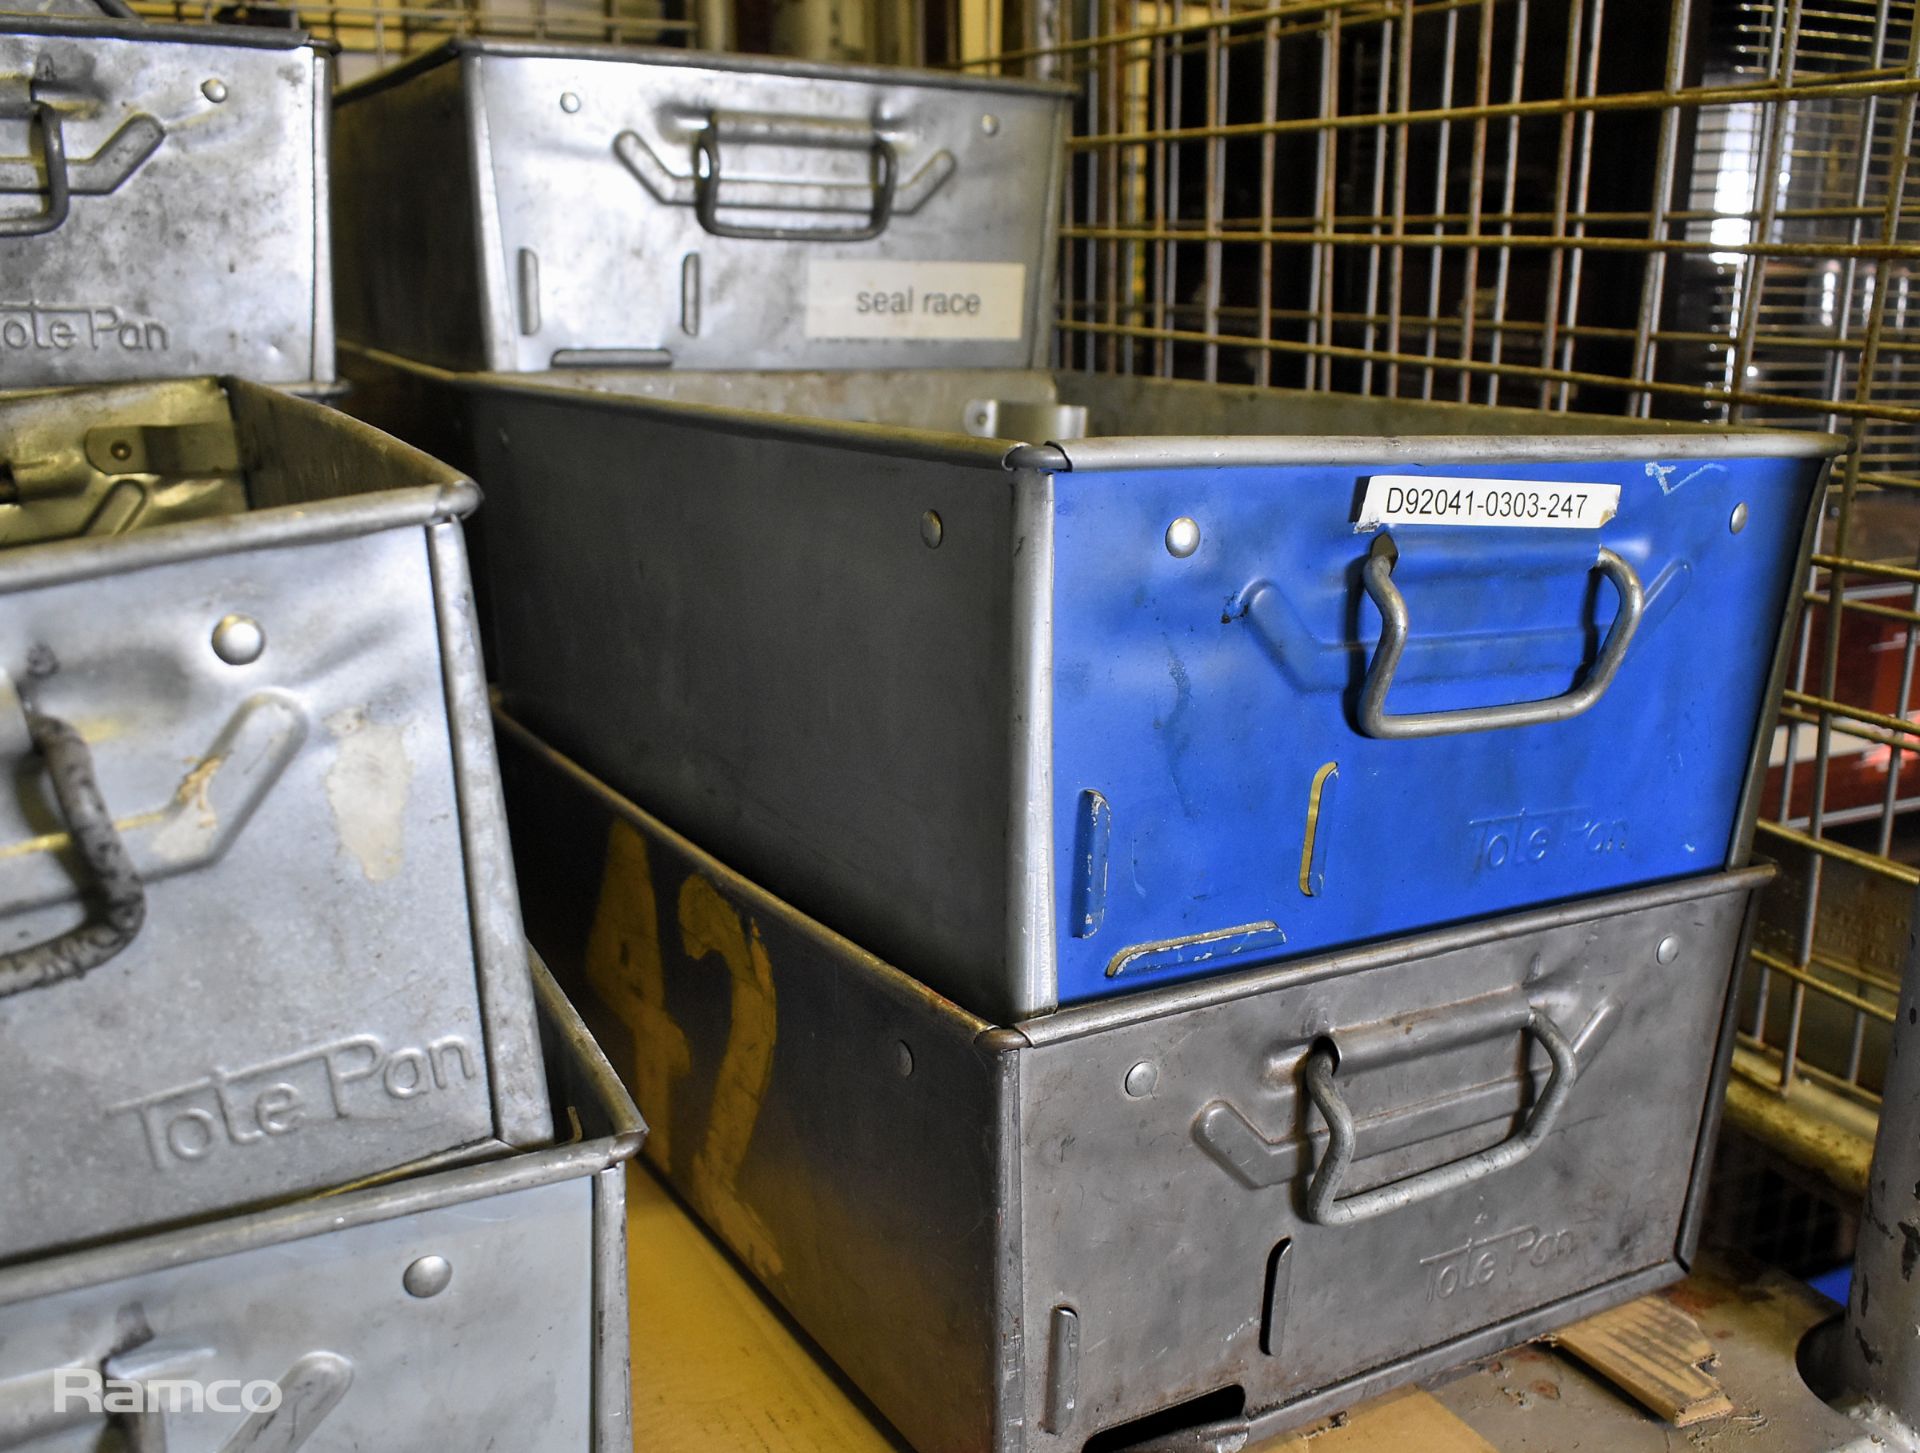 16x engineers tote pan storage bins - Image 4 of 4